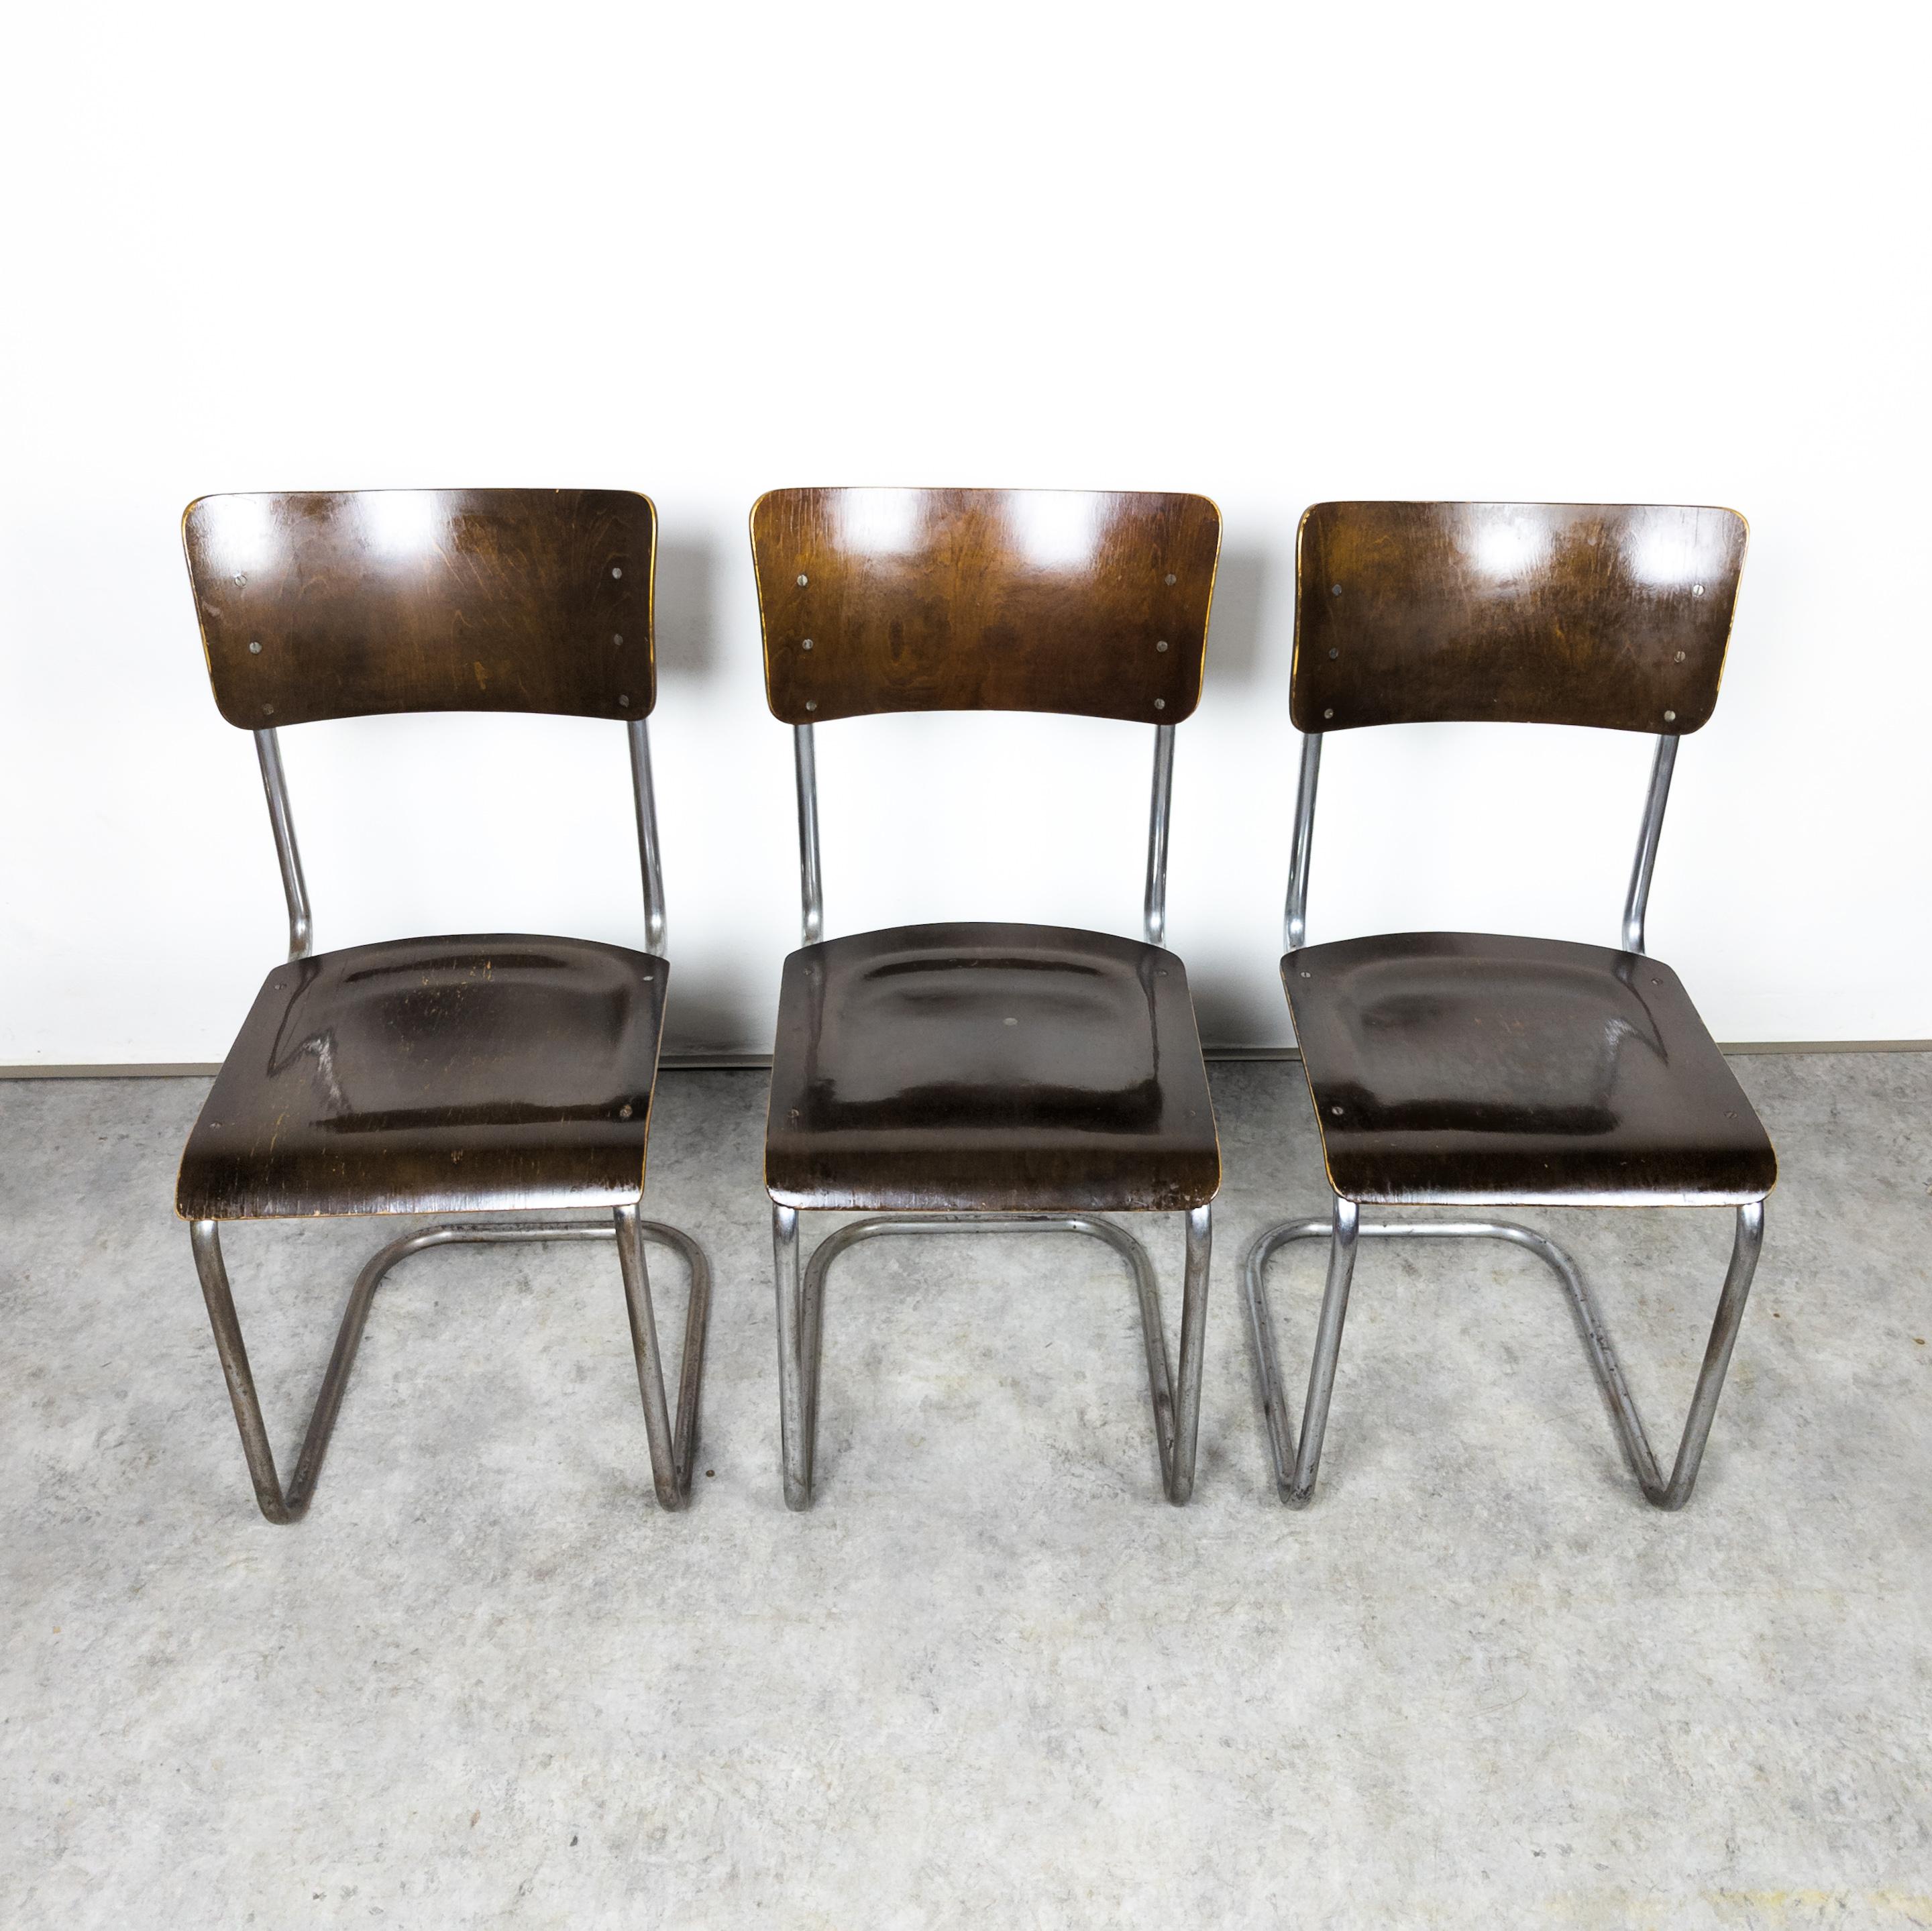 Frühe freitragende S 43-Stühle von Mart Stam, 1930er Jahre (Stahl)